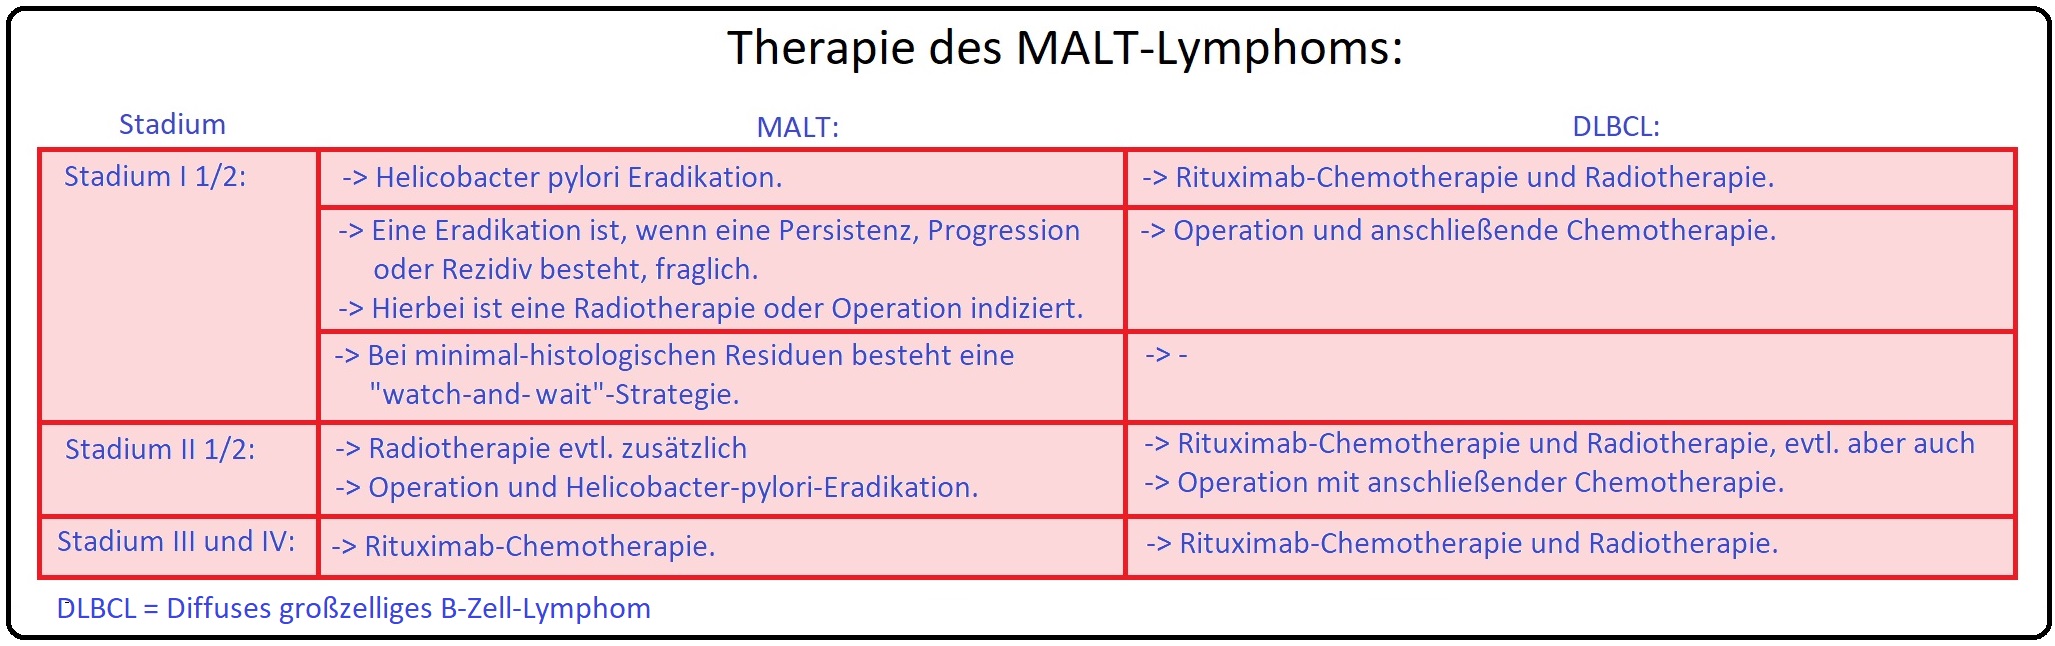 1174 Therapie des MALT Lymphoms